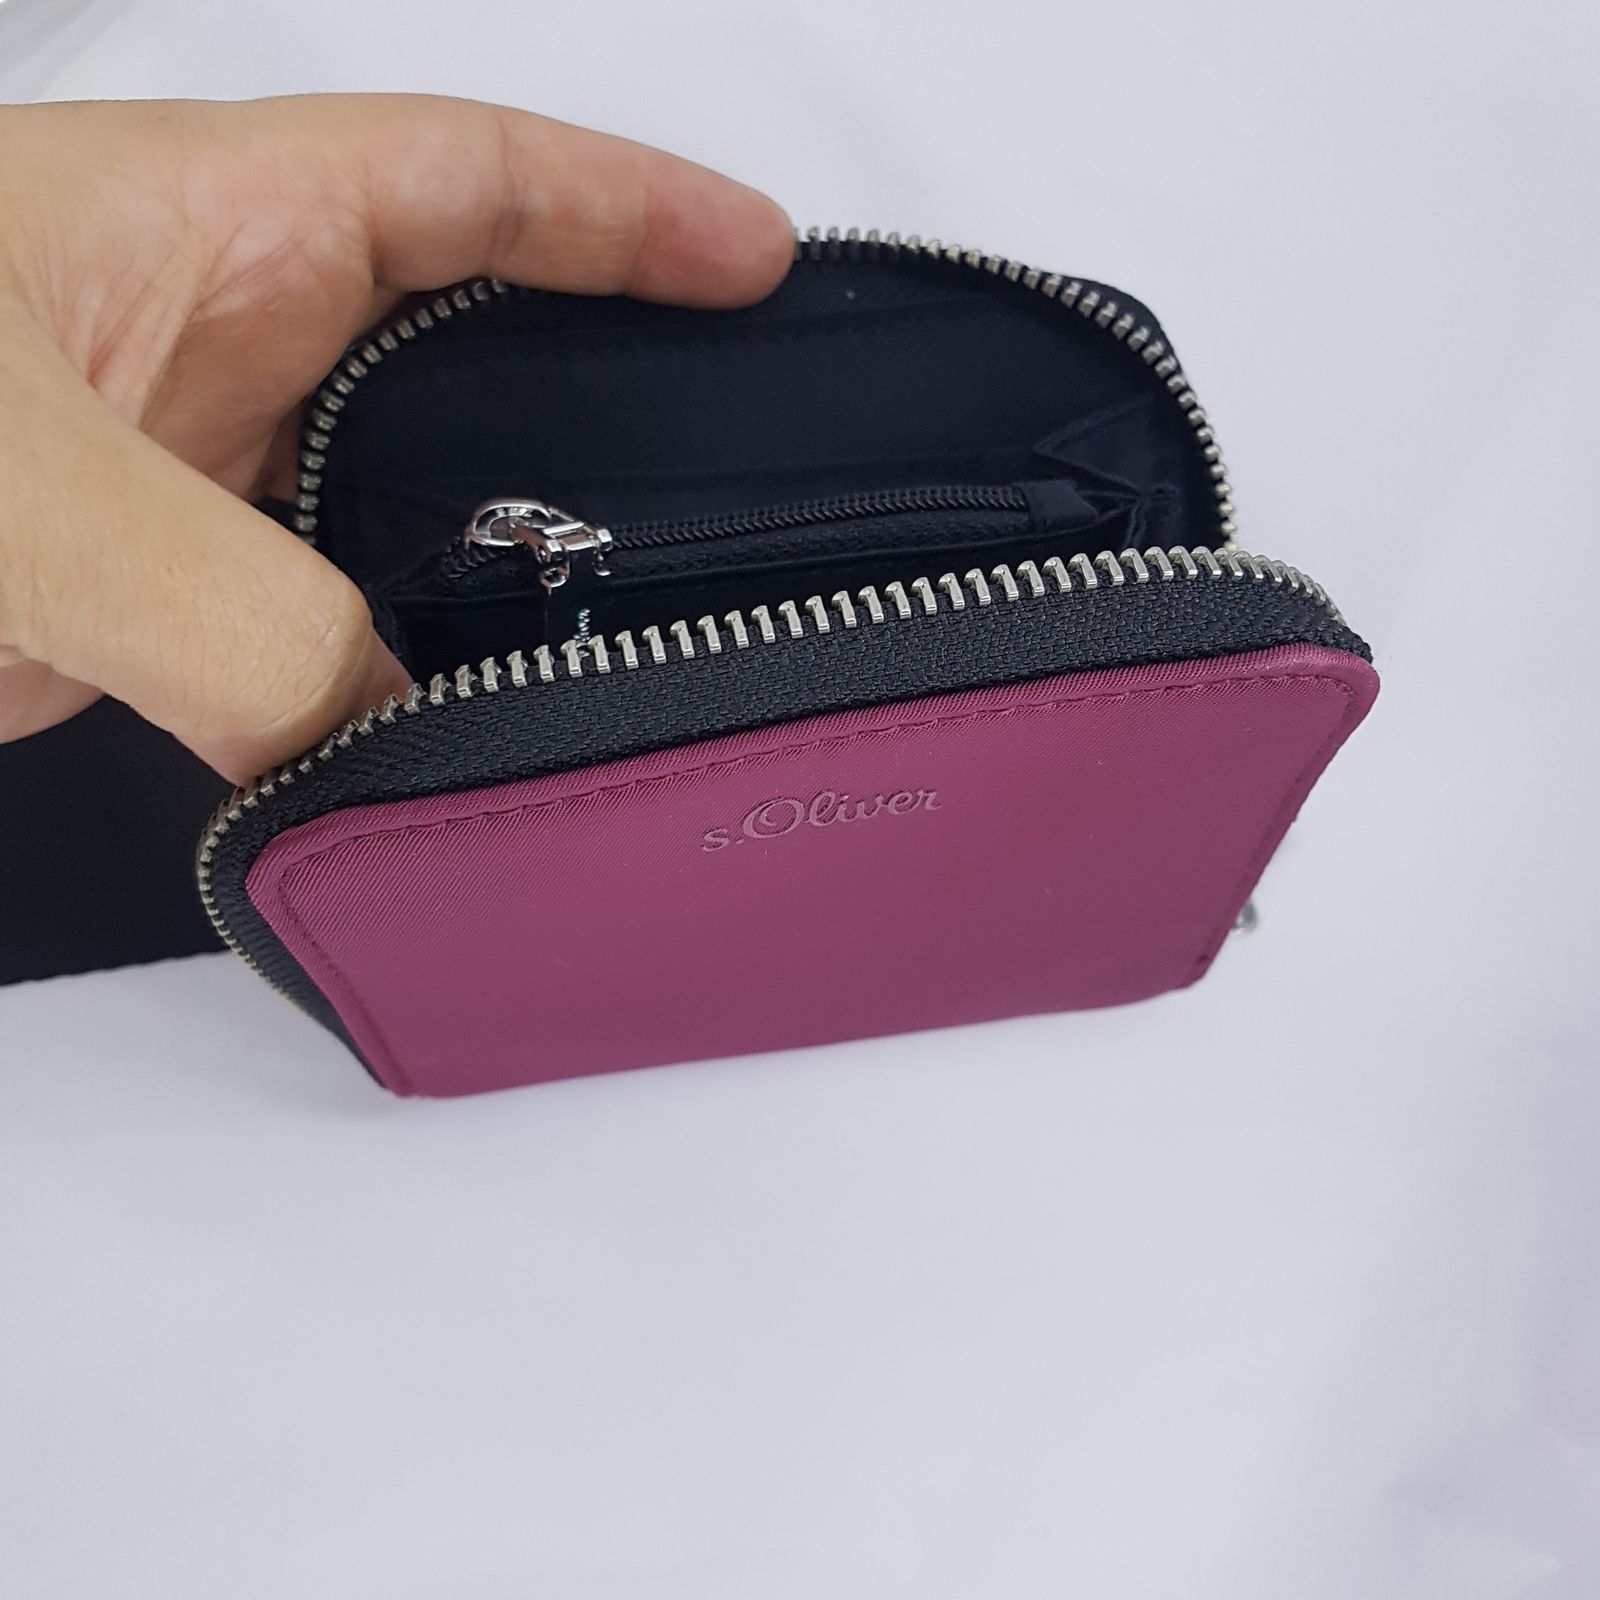 کیف دوشی زنانه اس.اولیور مدل 201.10.11.25.300.2110189 -  - 15